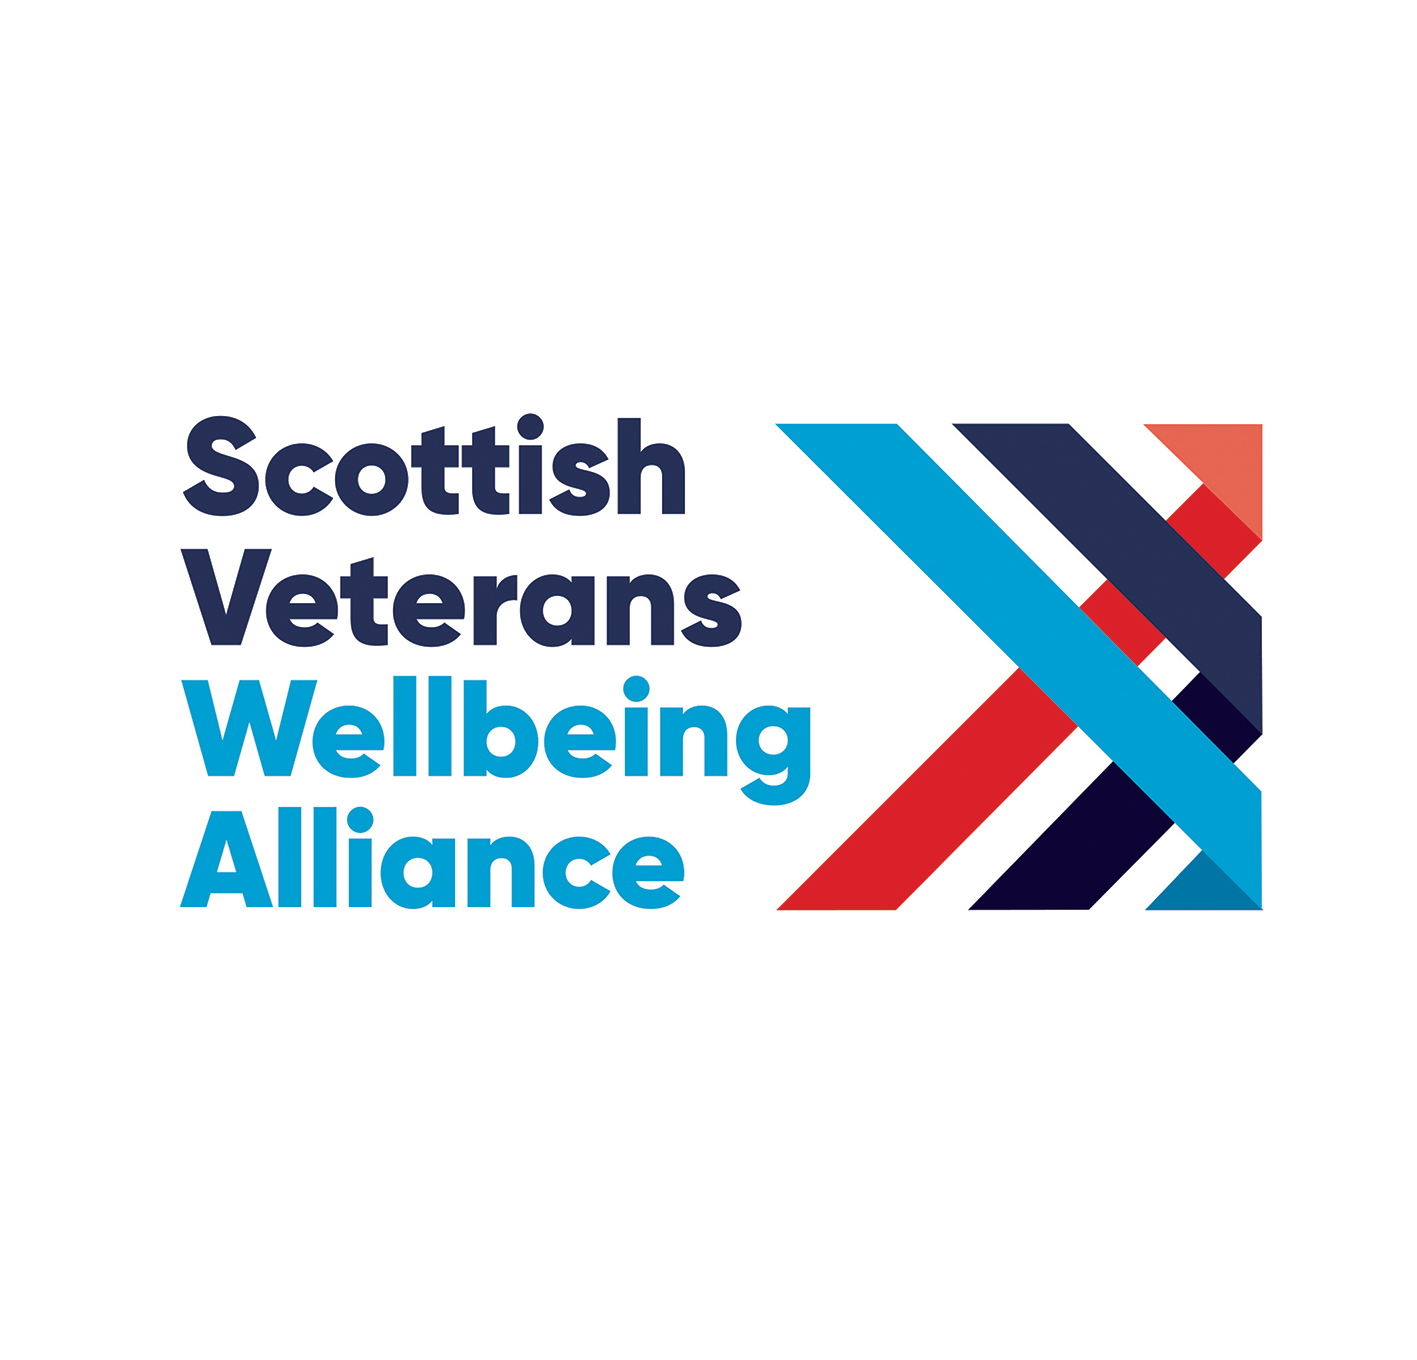 Scottish Veterans Wellbeing Alliance – Brand